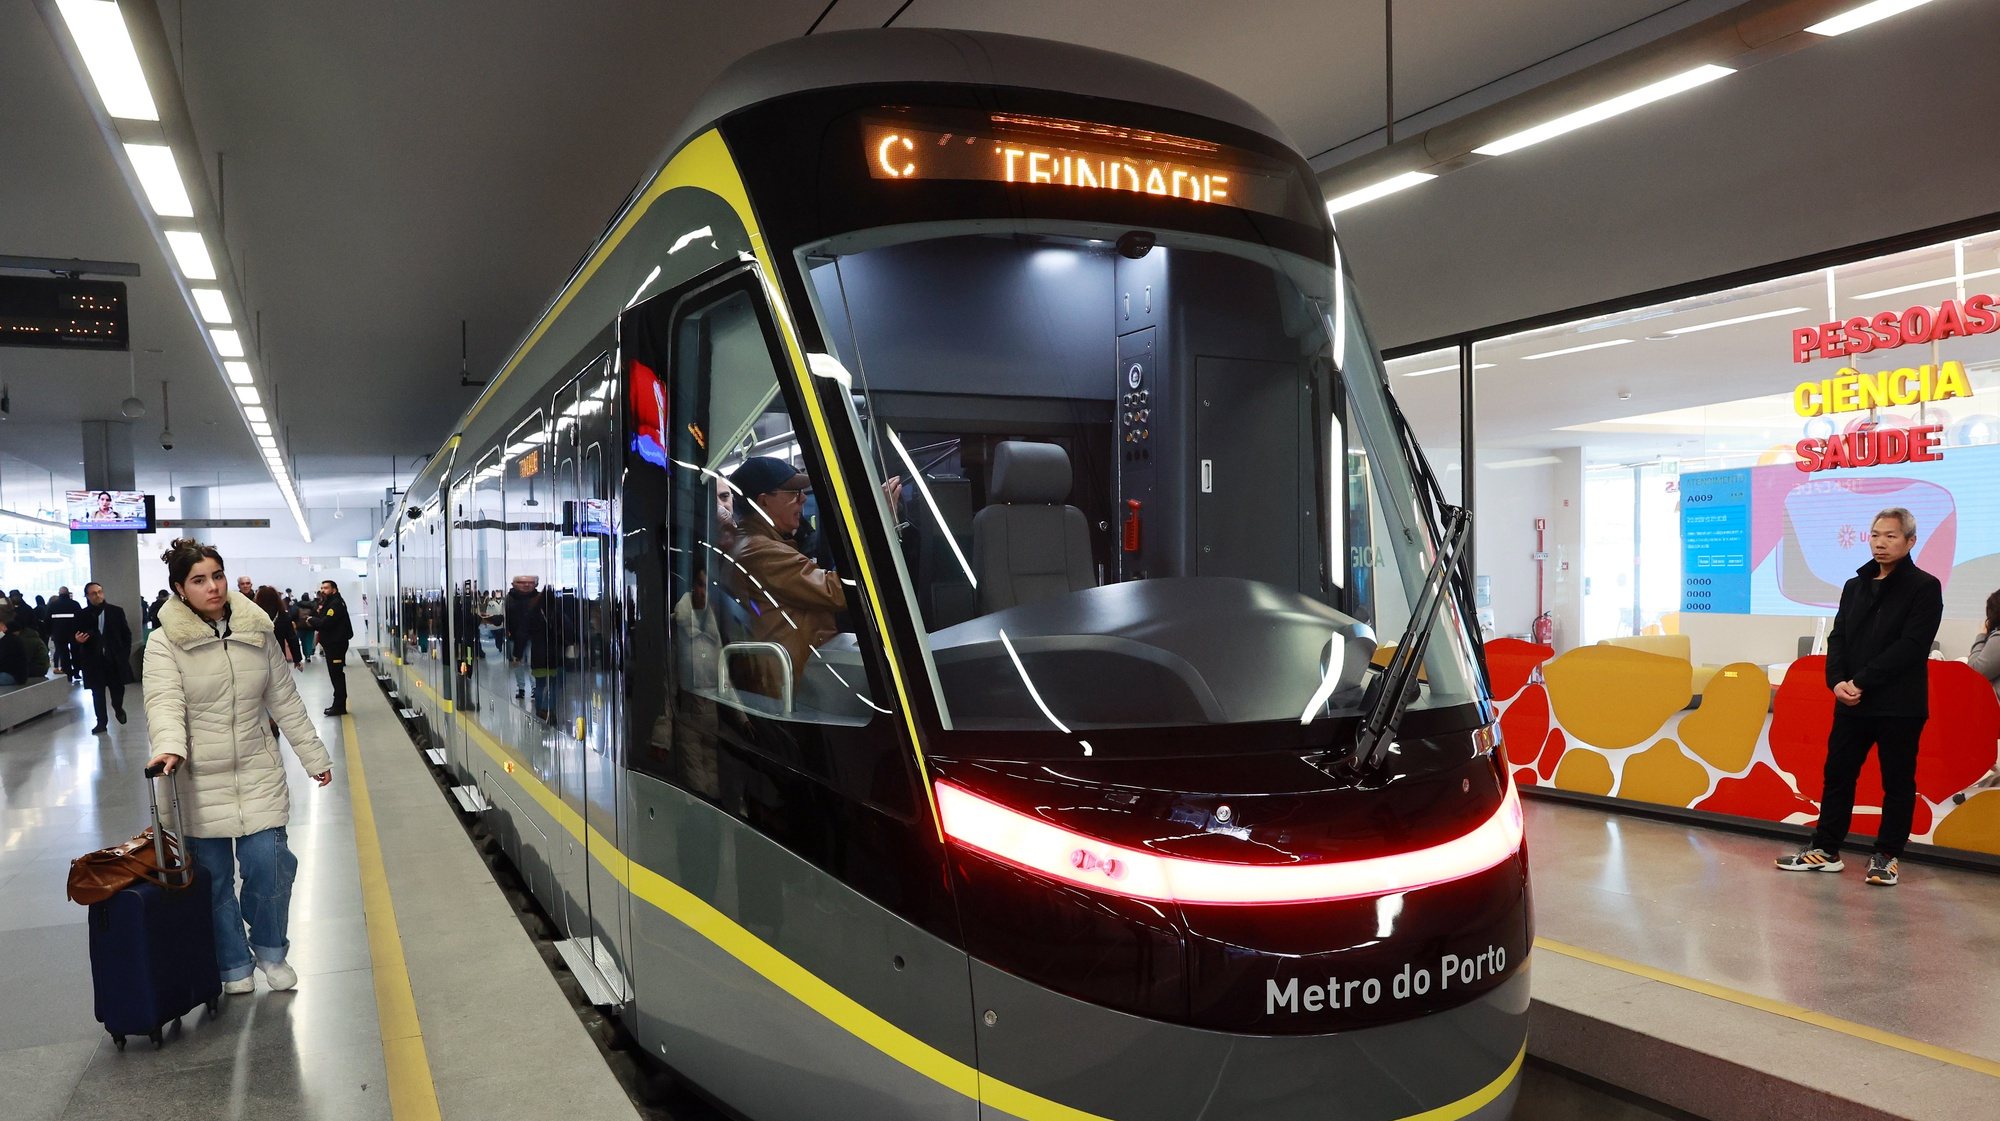 Novo veículo da frota do Metro do Porto,11 de fevereiro 2023. O novo veículo vai ficar em exposição na estação da Trindade até dia 14 com visitas abertas a toda a população. ESTELA SILVA/LUSA